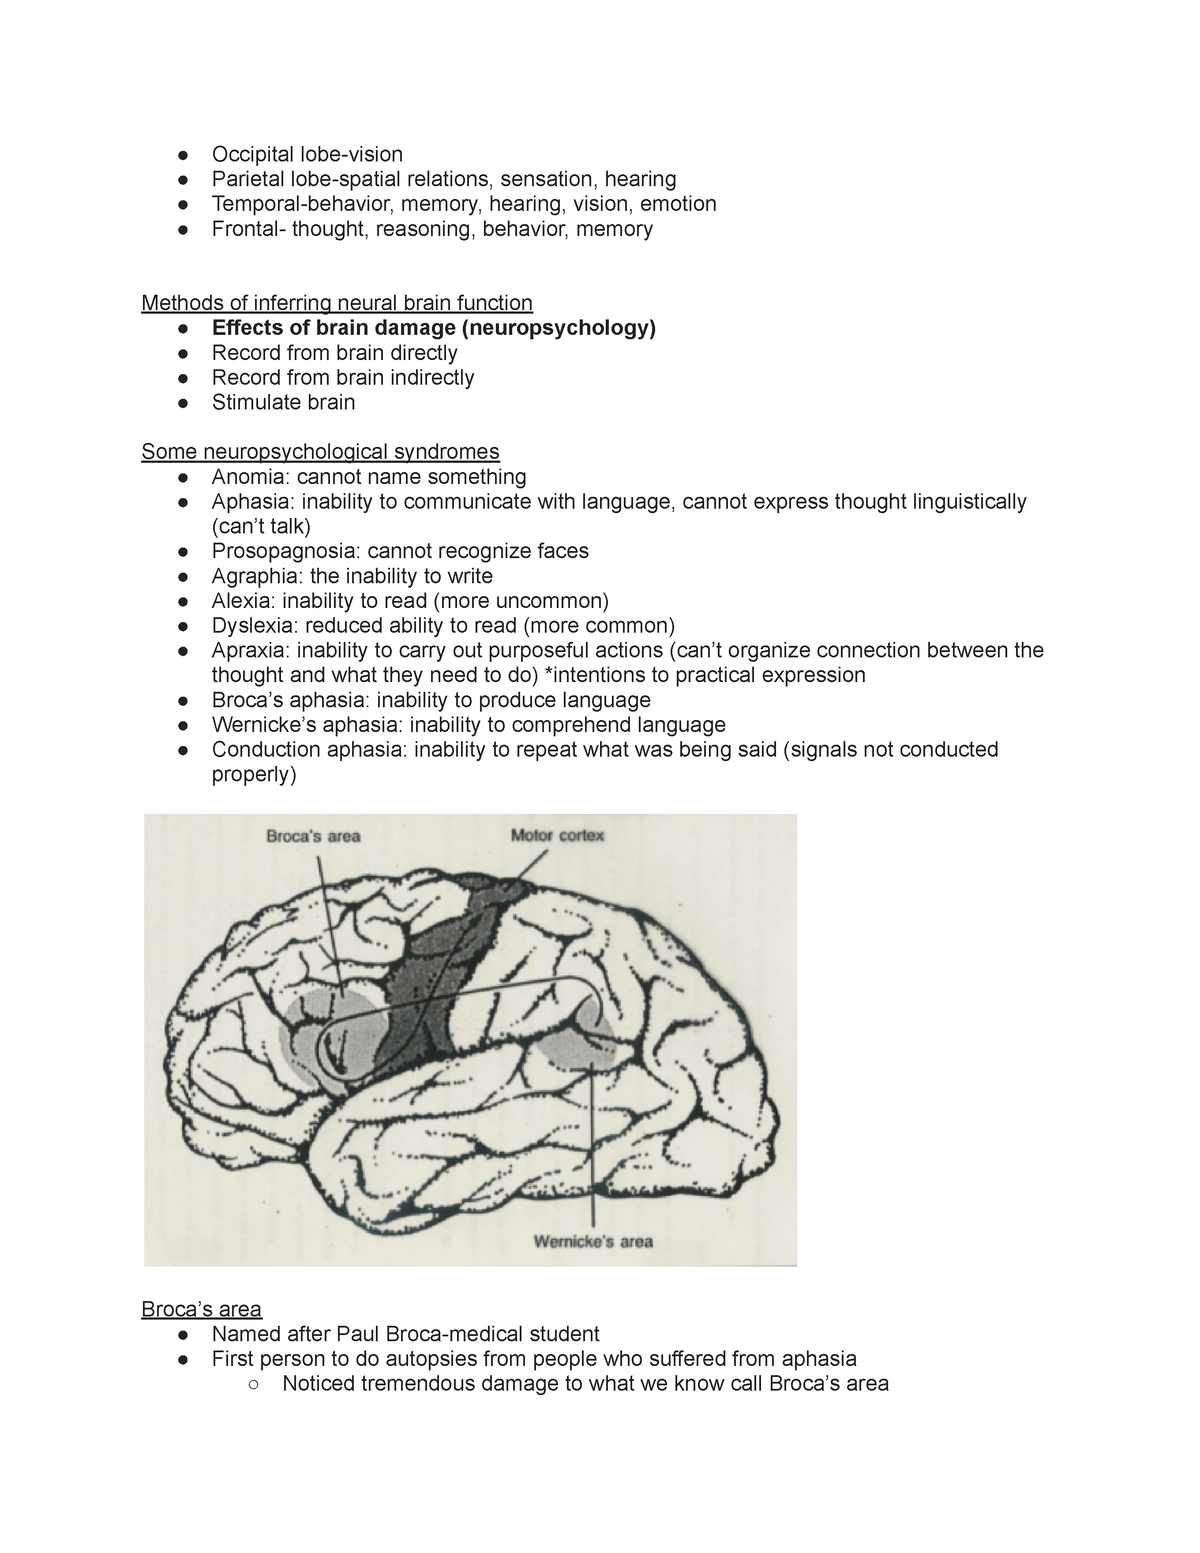 Psyc001 Lecture Notes Part 2 Occipital Lobe Vision Parietal Lobe Spatial Relations Sensation 2021